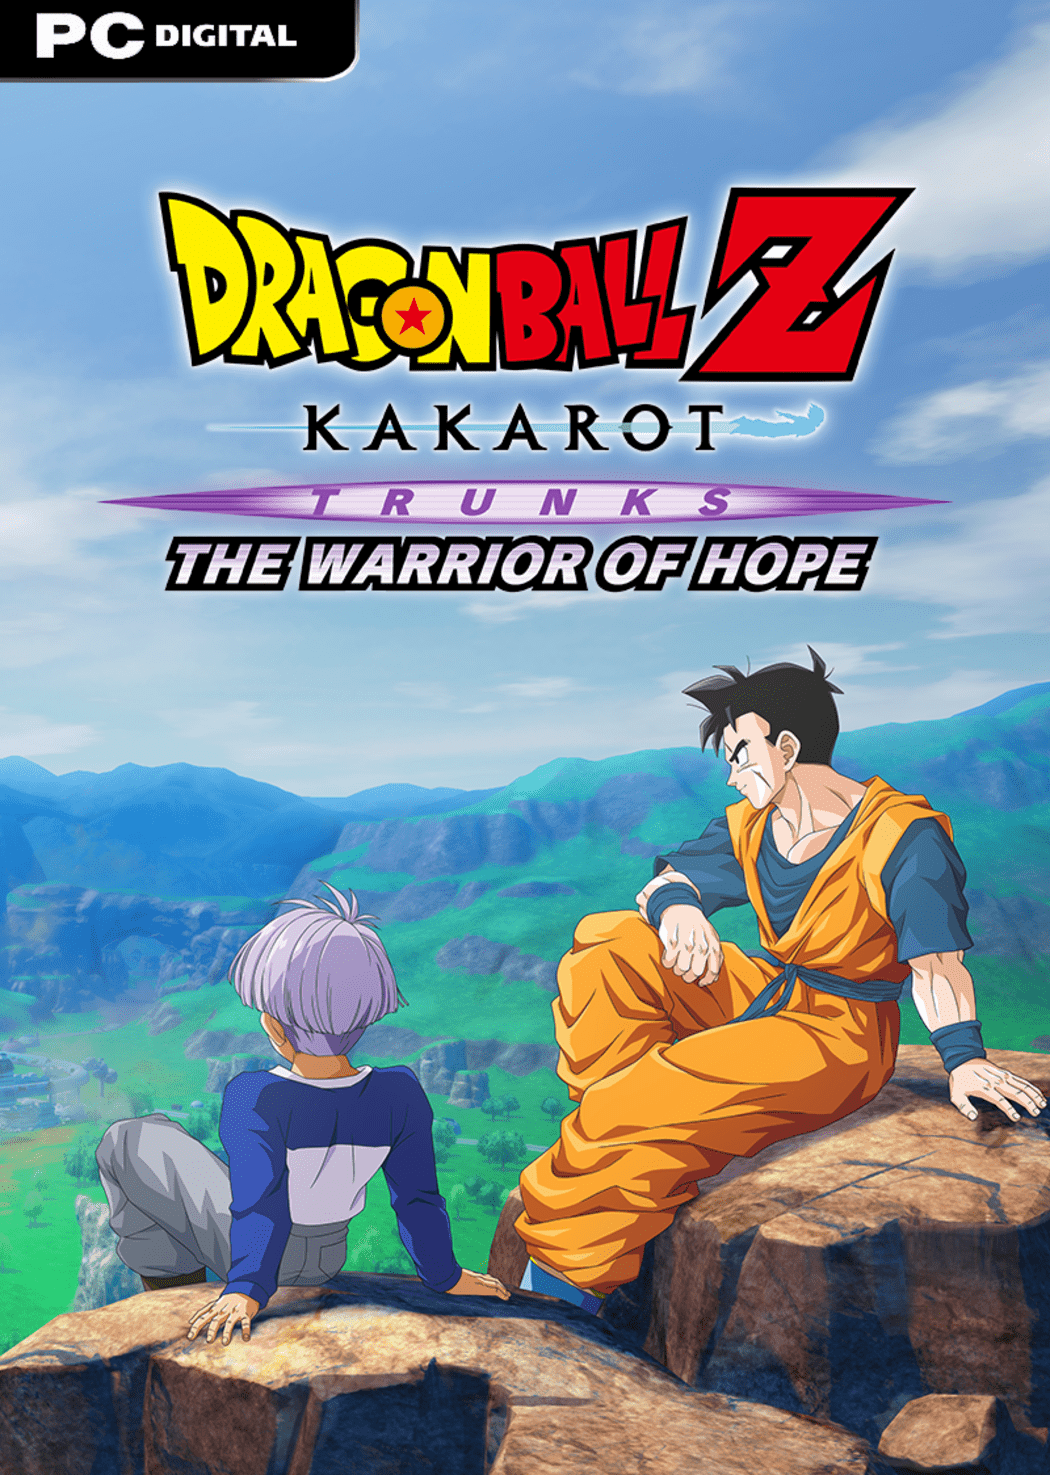 Dragon Ball Z: Kakarot  DLC do Torneio de Artes Marciais recebe trailer  oficial